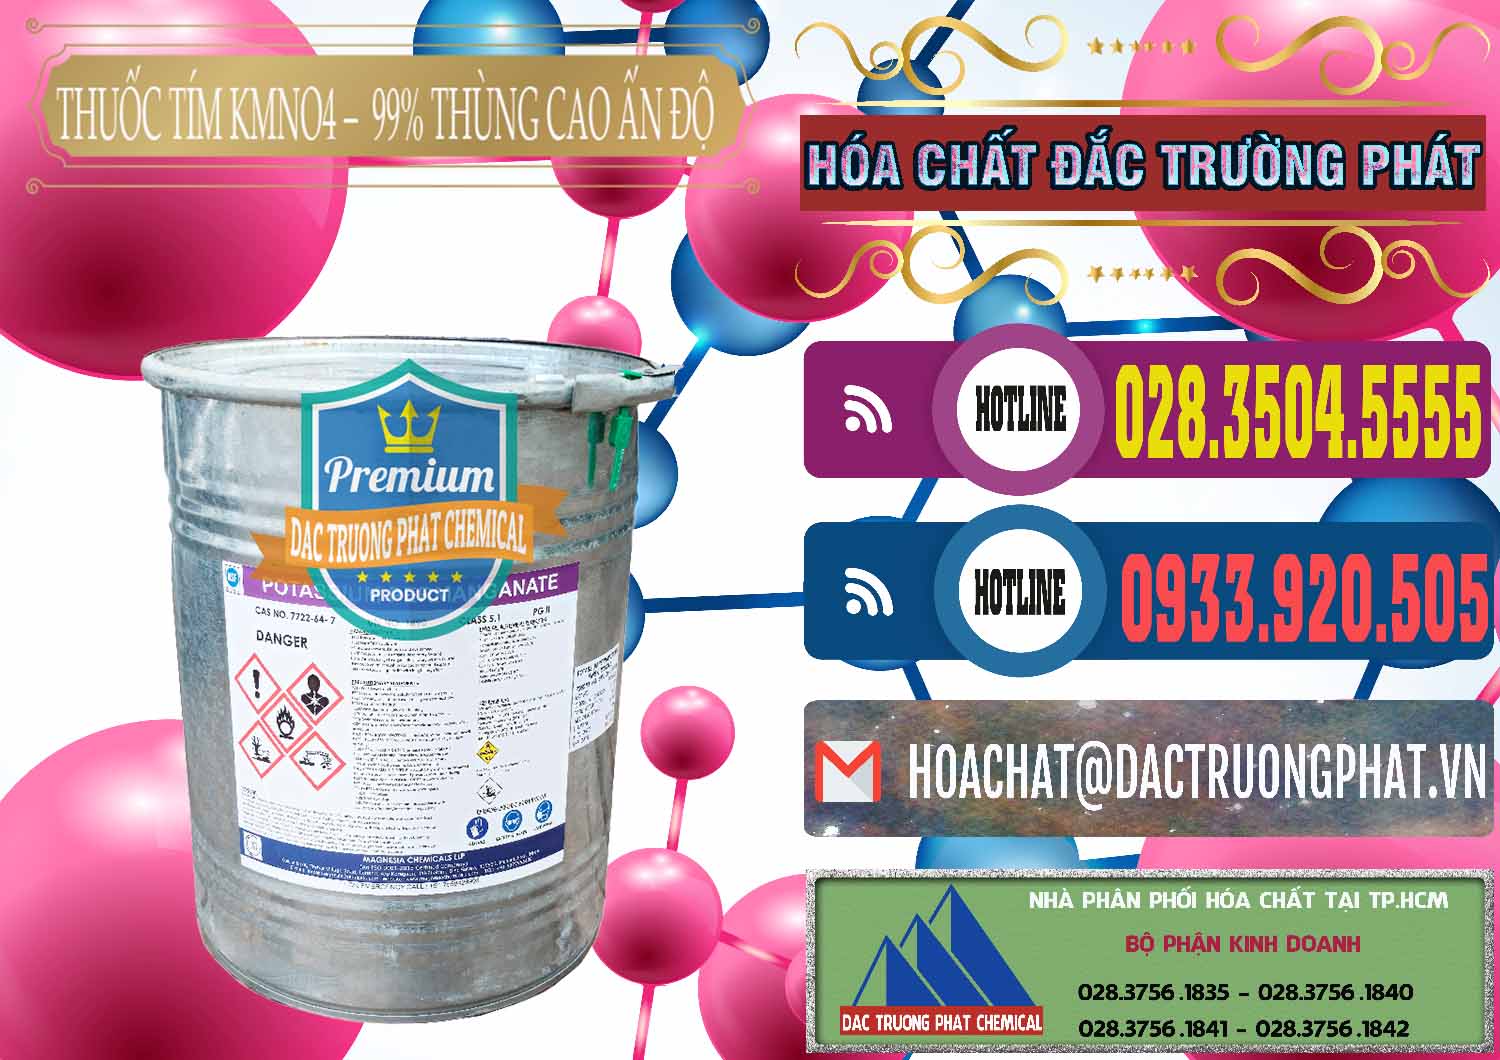 Nơi phân phối _ bán Thuốc Tím - KMNO4 Thùng Cao 99% Magnesia Chemicals Ấn Độ India - 0164 - Công ty nhập khẩu & phân phối hóa chất tại TP.HCM - muabanhoachat.com.vn